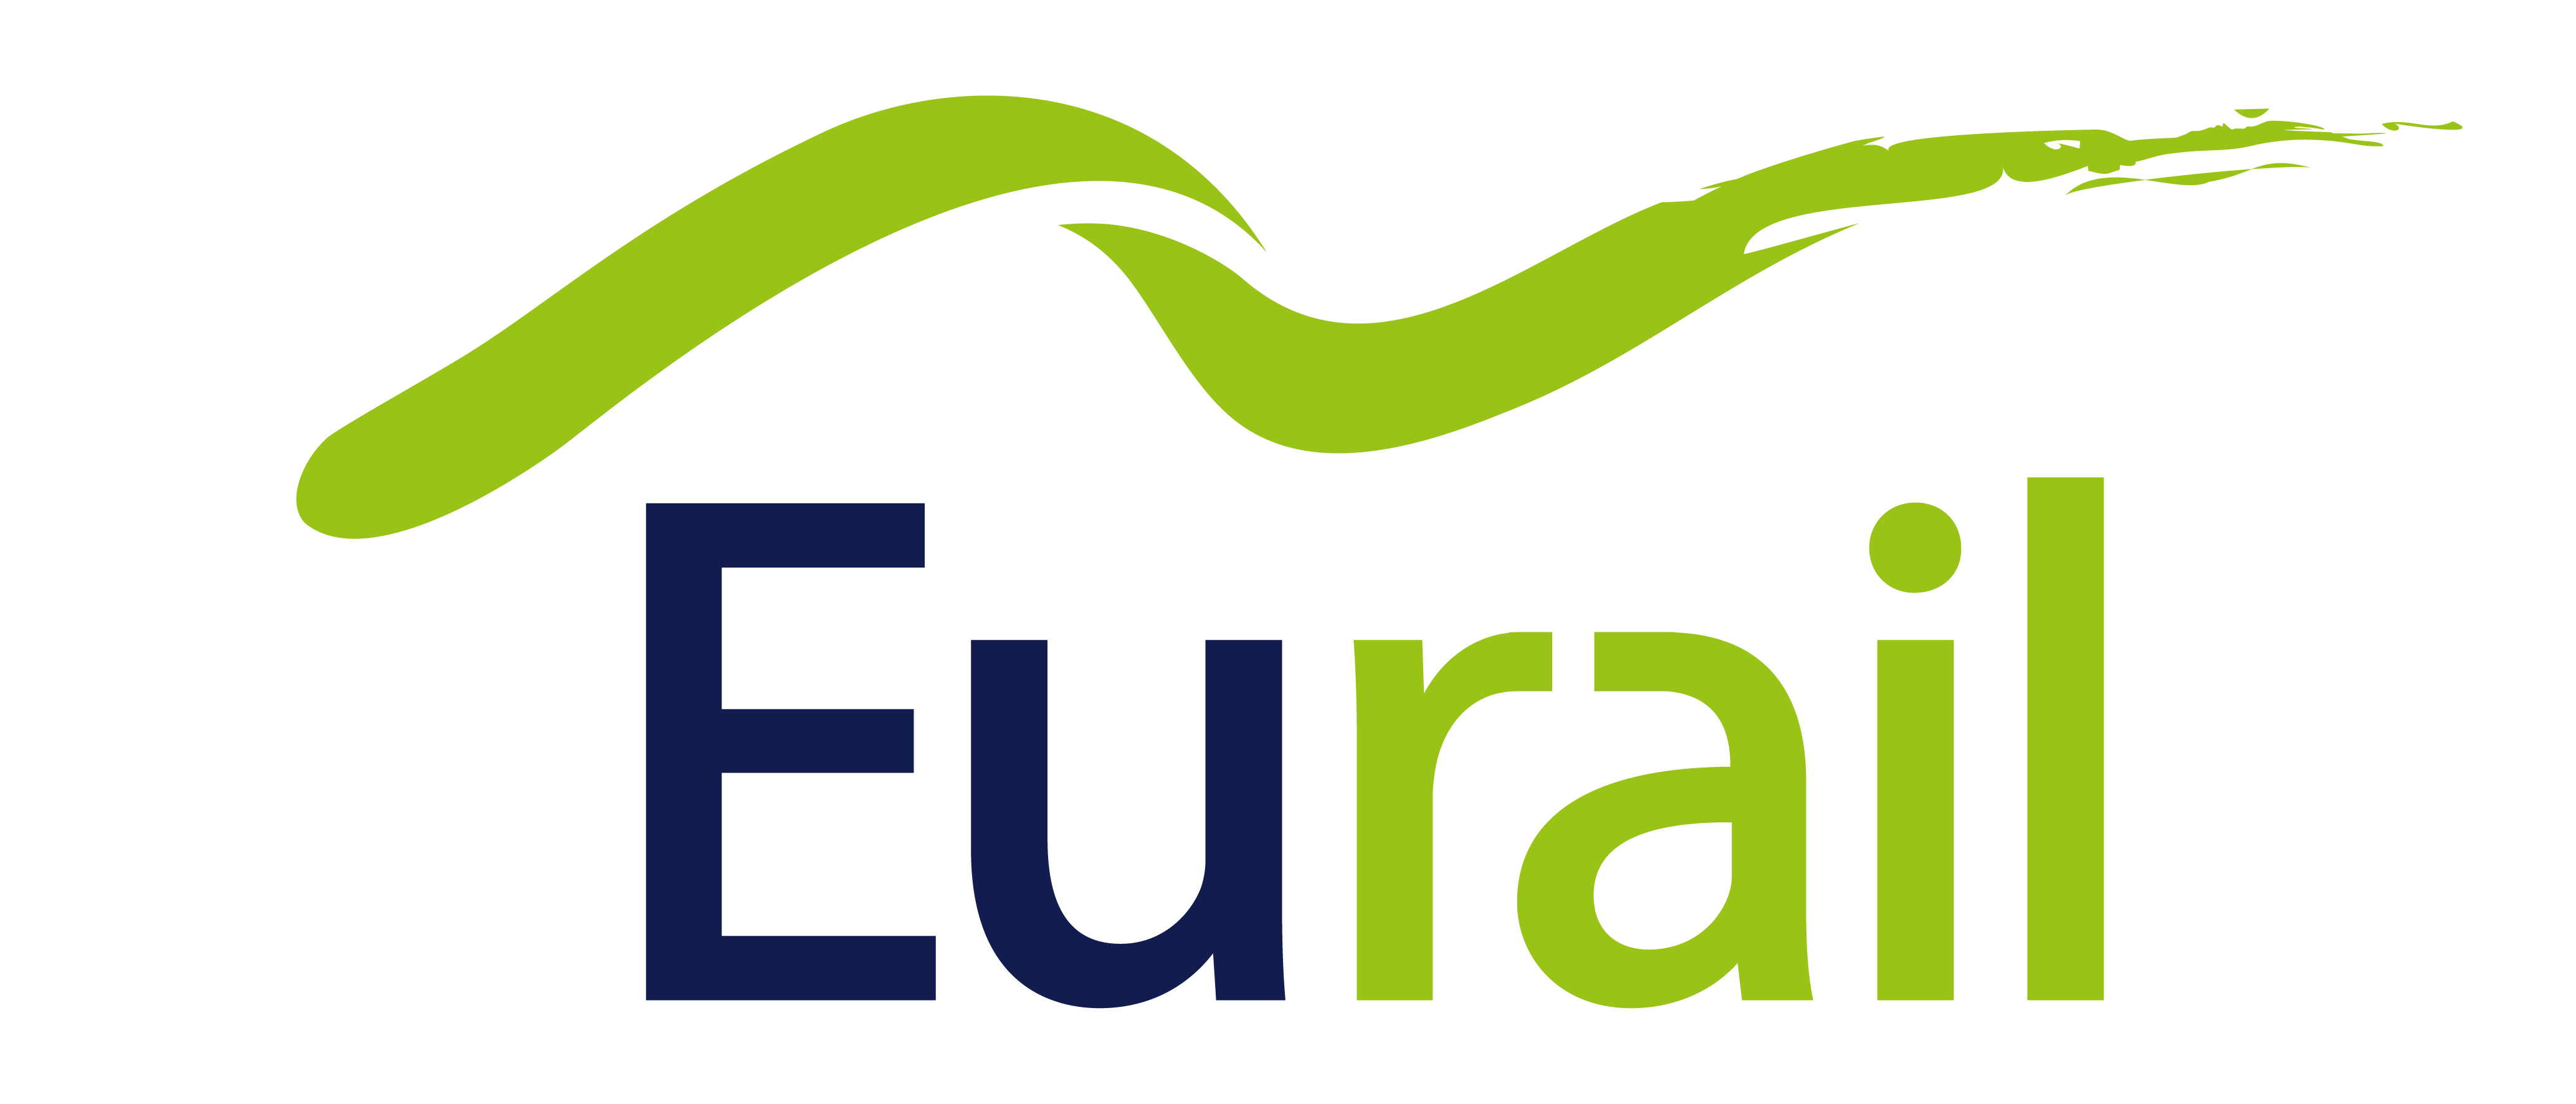 Eurail.com